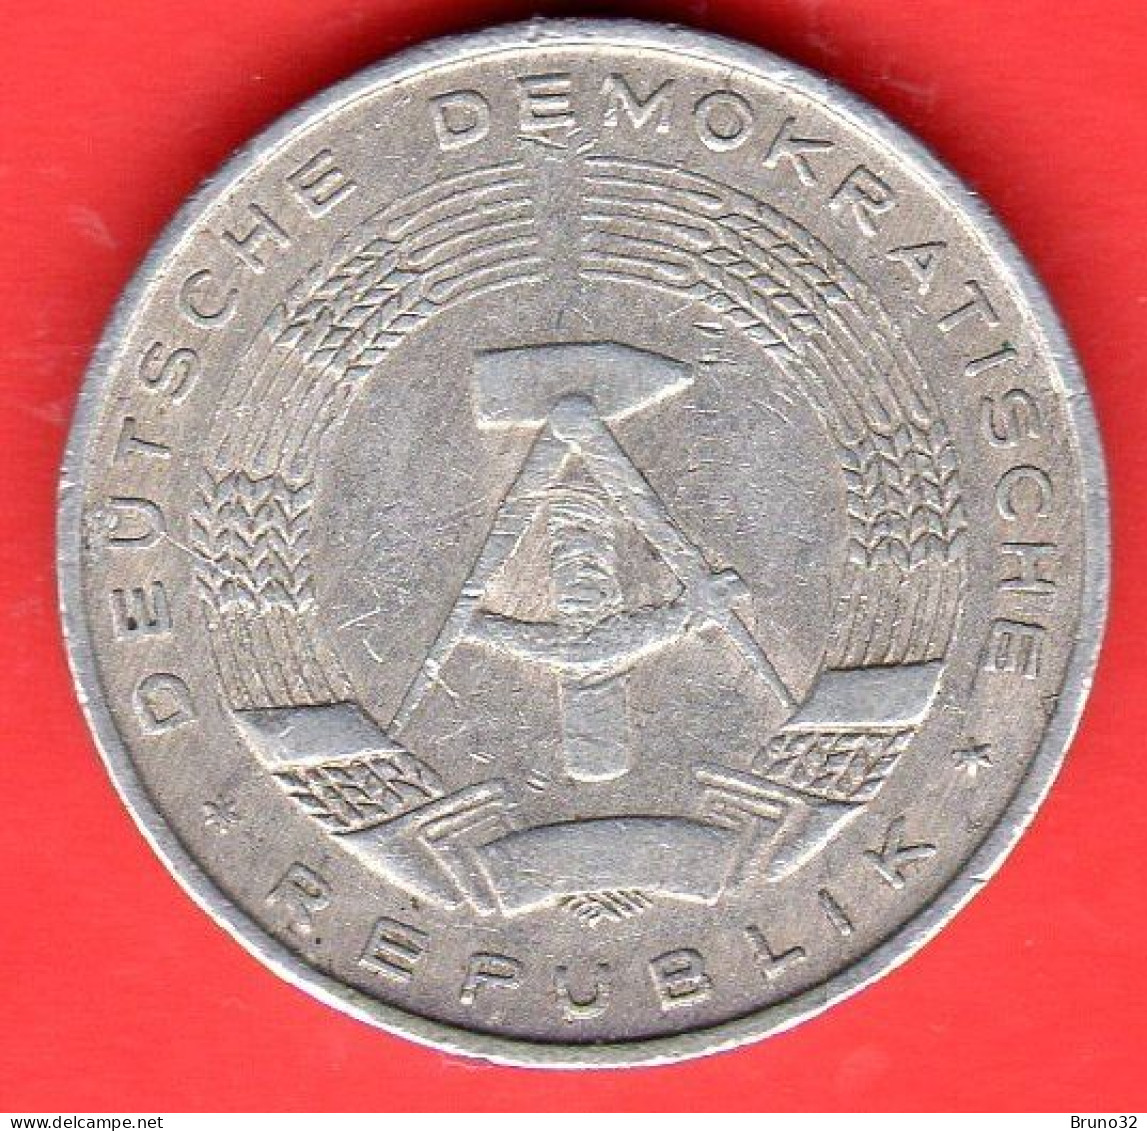 RDA - DDR - Germany - 1979 - 10 Pfennig - BB/VF - Come Da Foto - 10 Pfennig